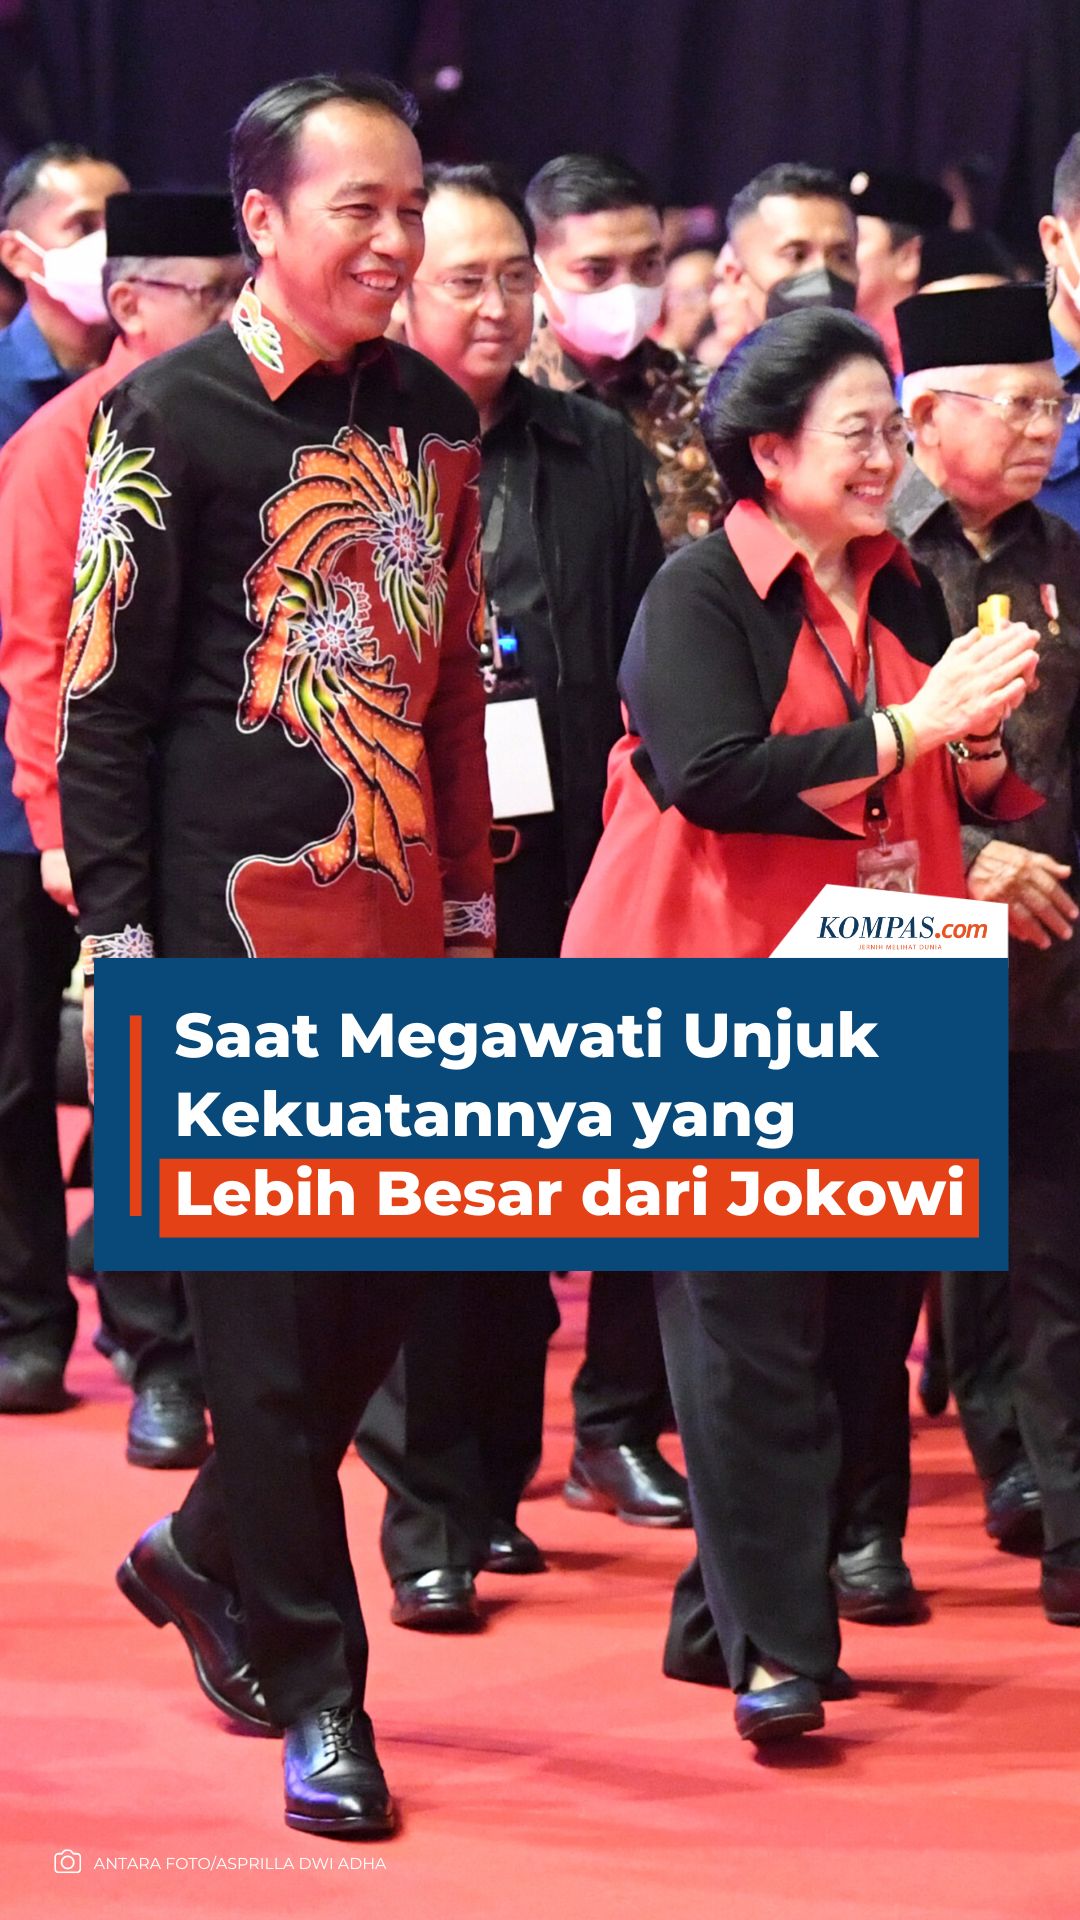 Saat Megawati Unjuk Kekuatannya yang Lebih Besar dari Jokowi